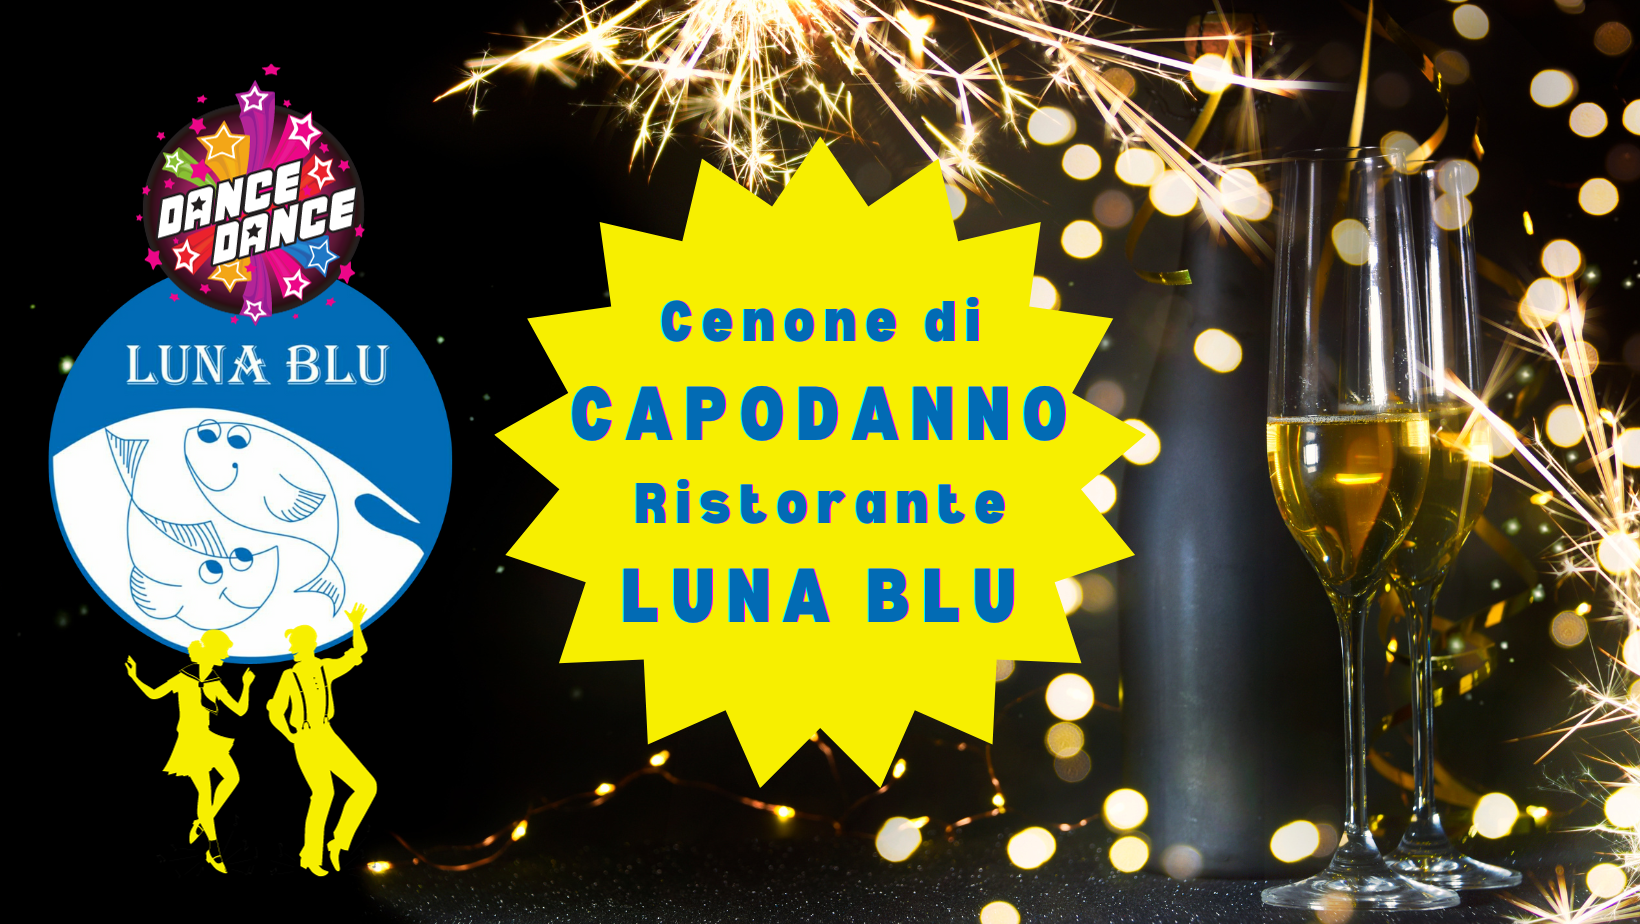 Live Music al Cenone di Capodanno al Ristorante Luna Blu Parma | Musica dal vivo, Dance e fantastiso Menù di pesce freschissimo!